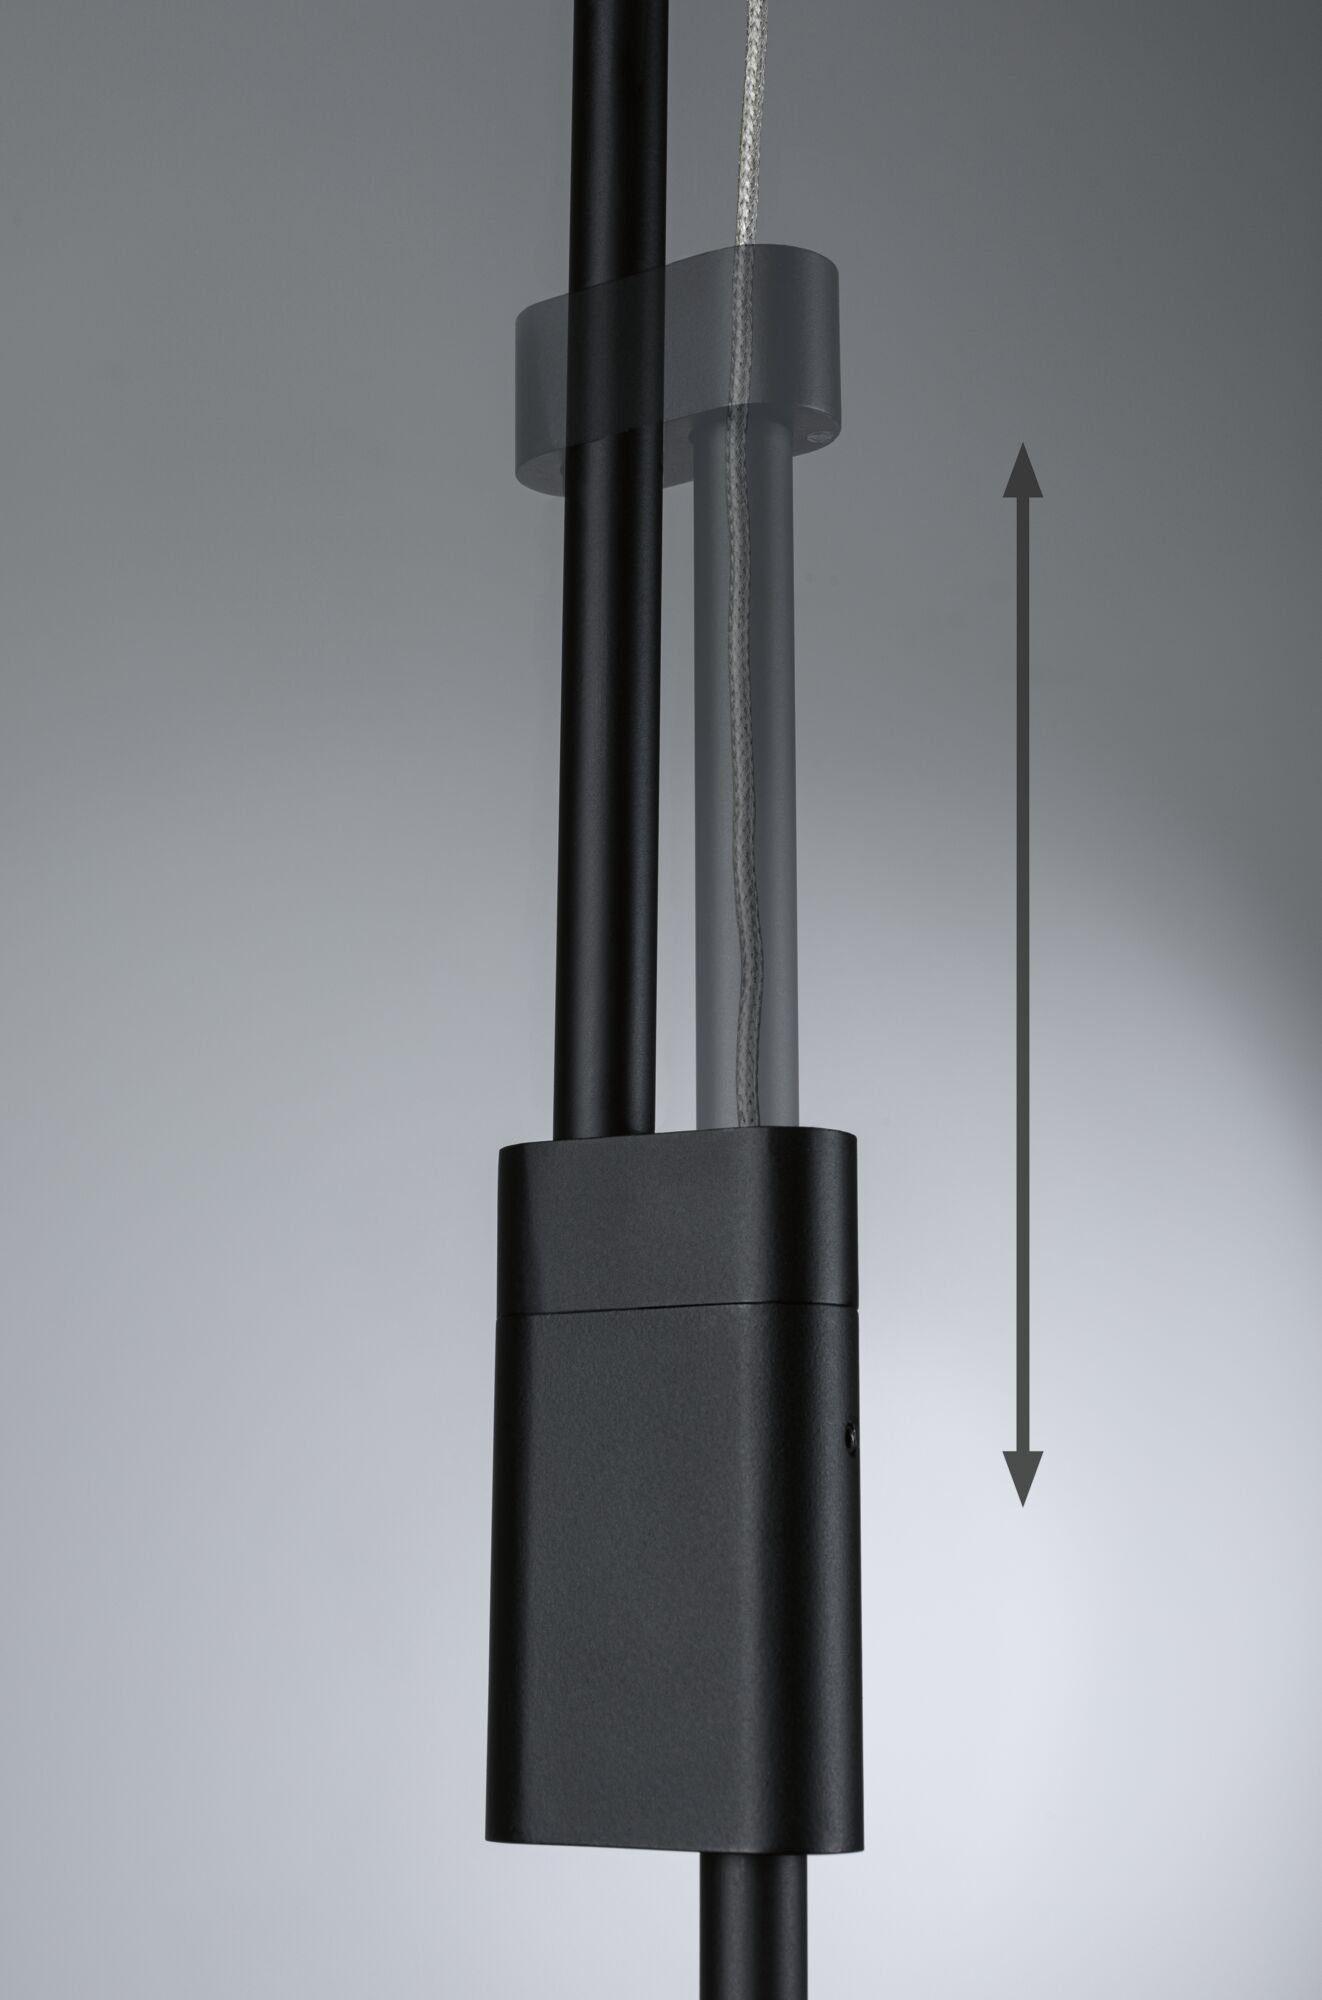 Paulmann LED Pendelleuchte Puric Pane Metall, Warmweiß, Home fest schwarz dimmbar Smart 6x6W integriert, Zigbee 230V LED Effect